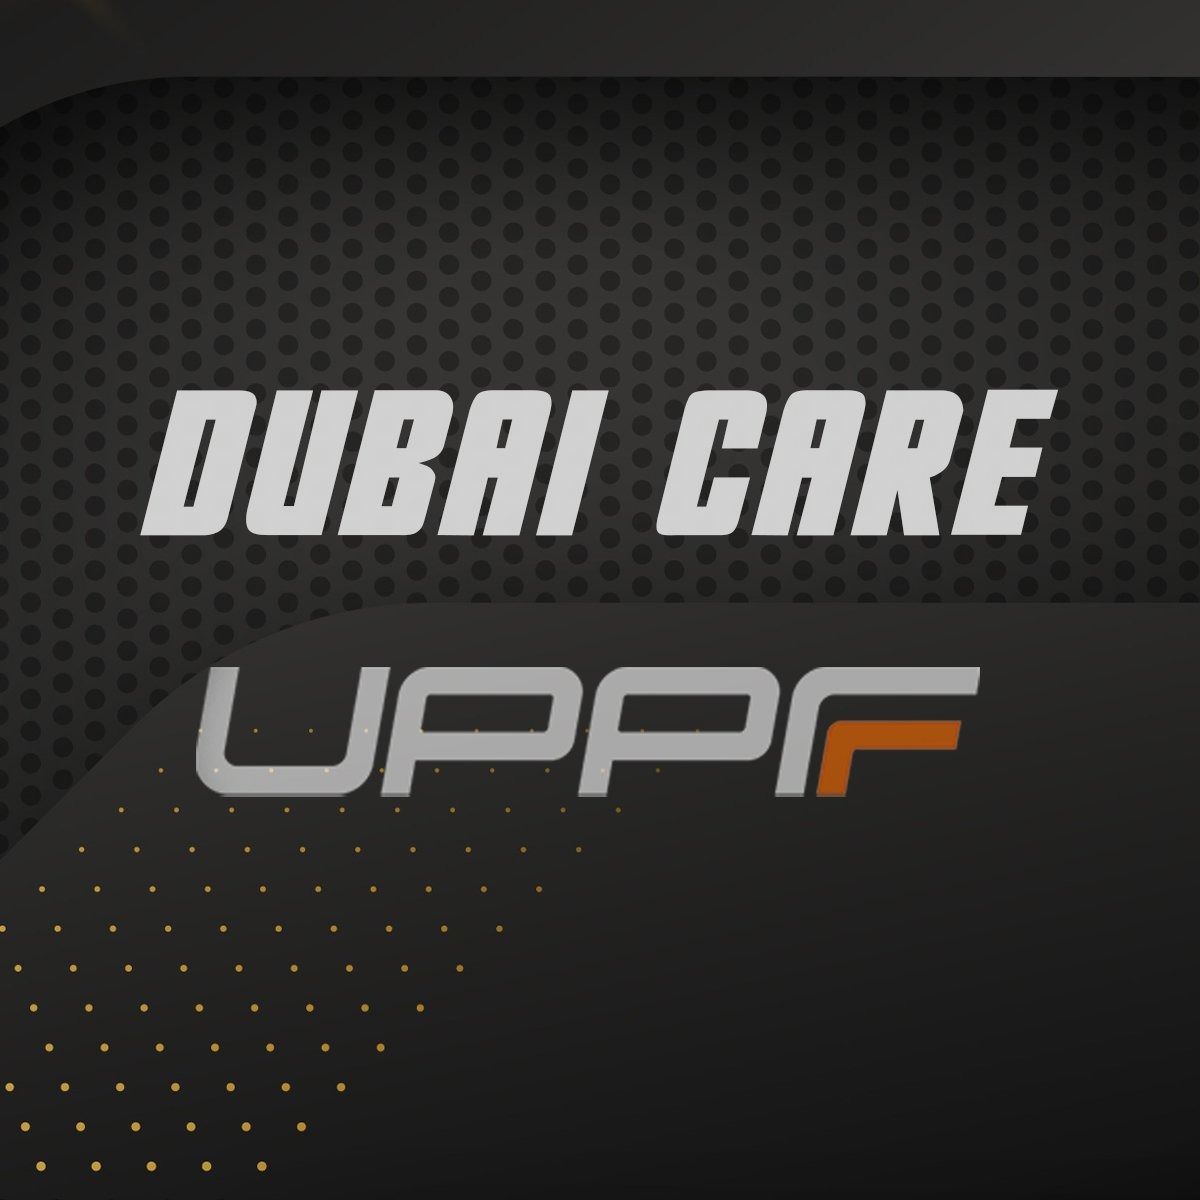 Dubai Care